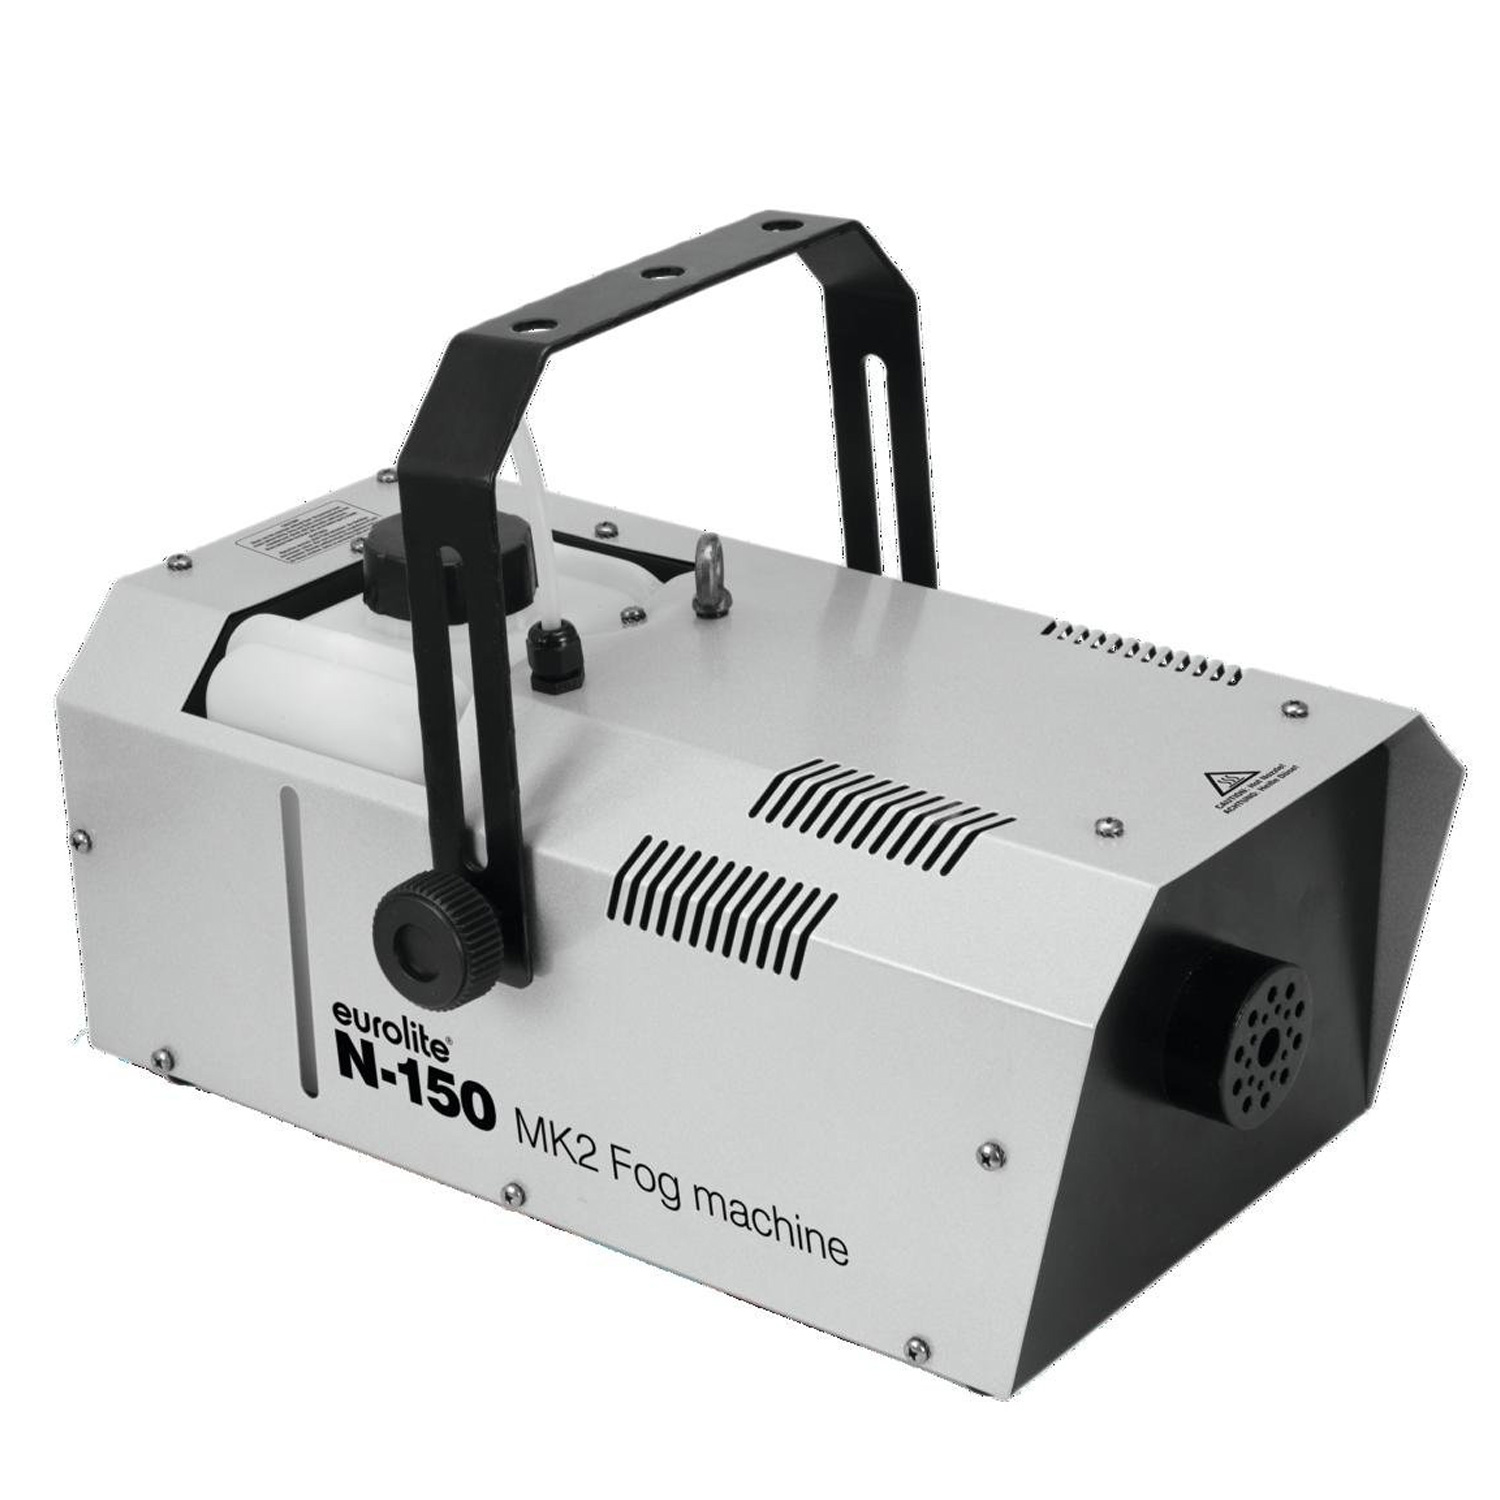 N-150 MK2 Nebelmaschine mit Timerfernbedienung und Funk